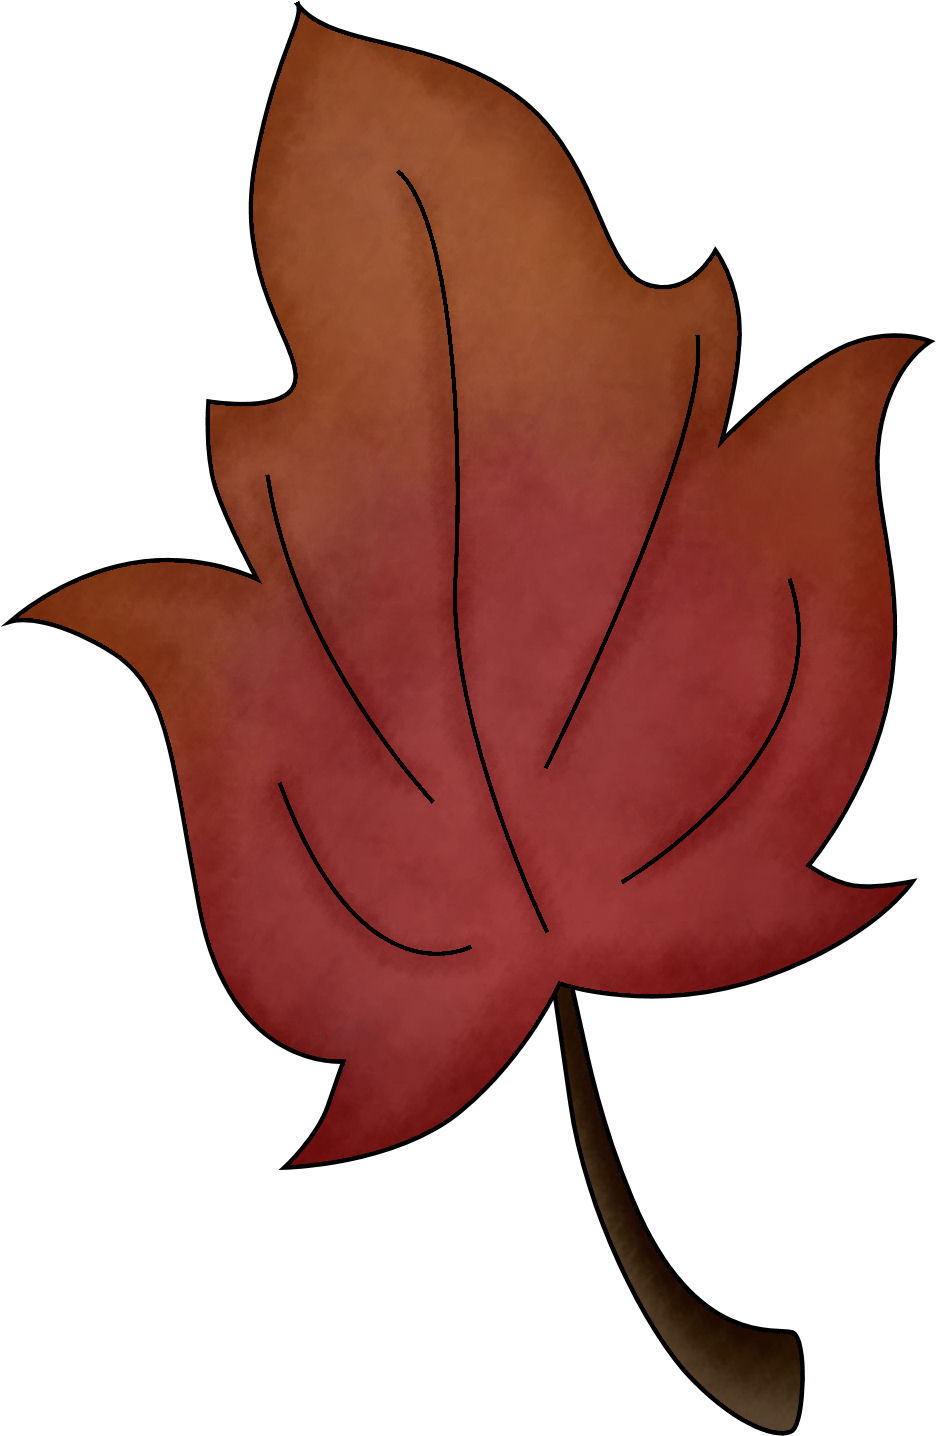 Autumn Leaves Pictures Clip Art   Clipart Best